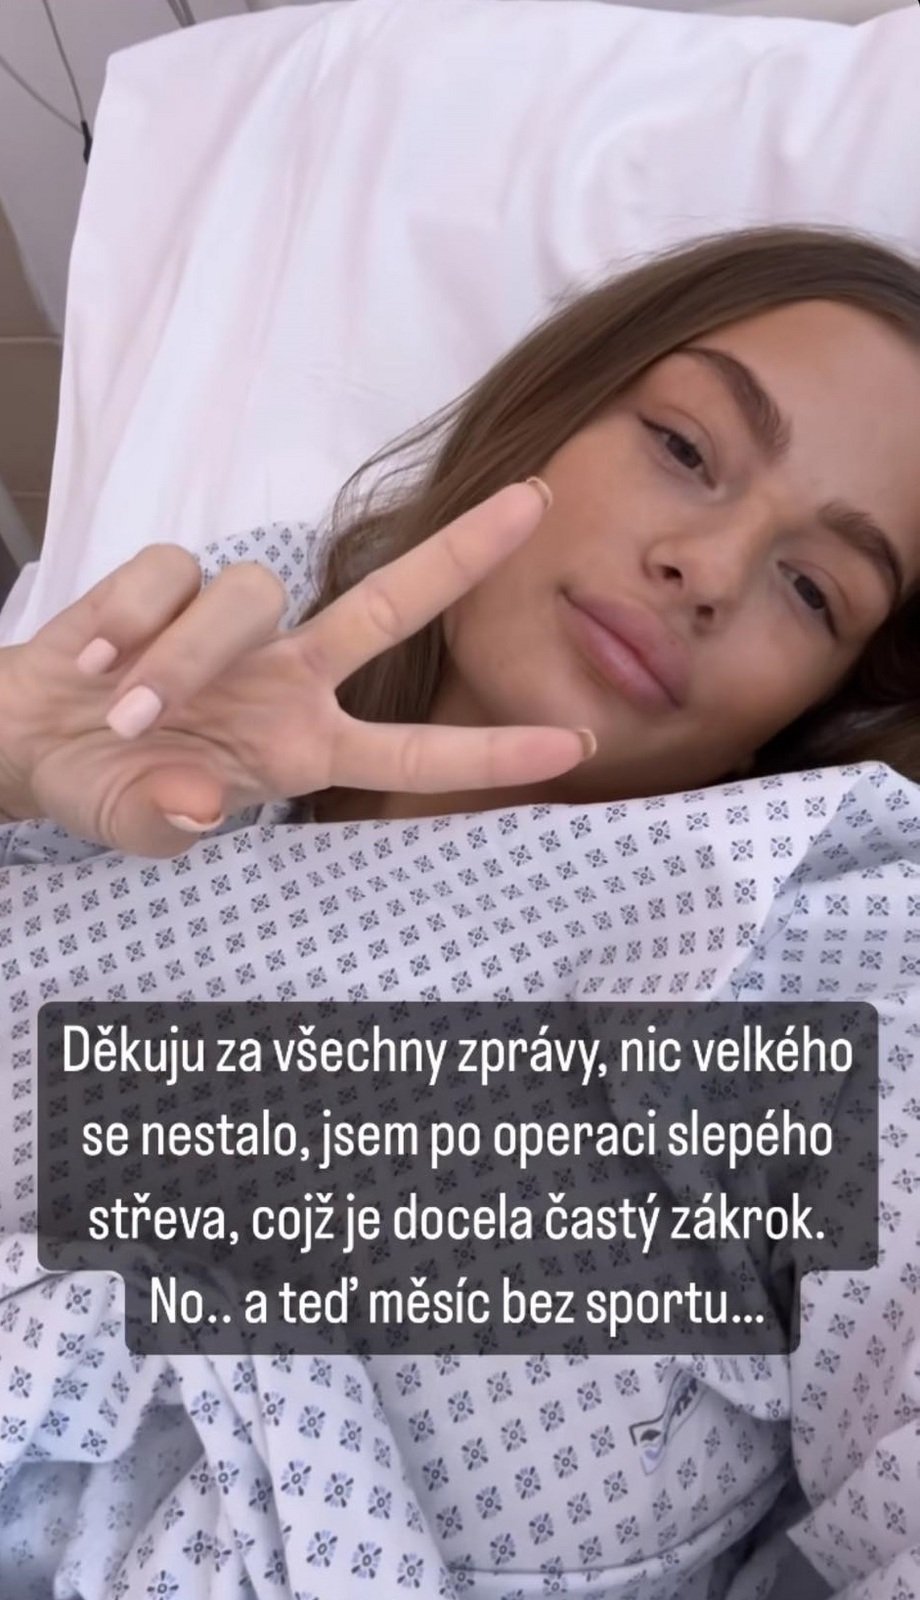 Sabina Karásková musela na operaci